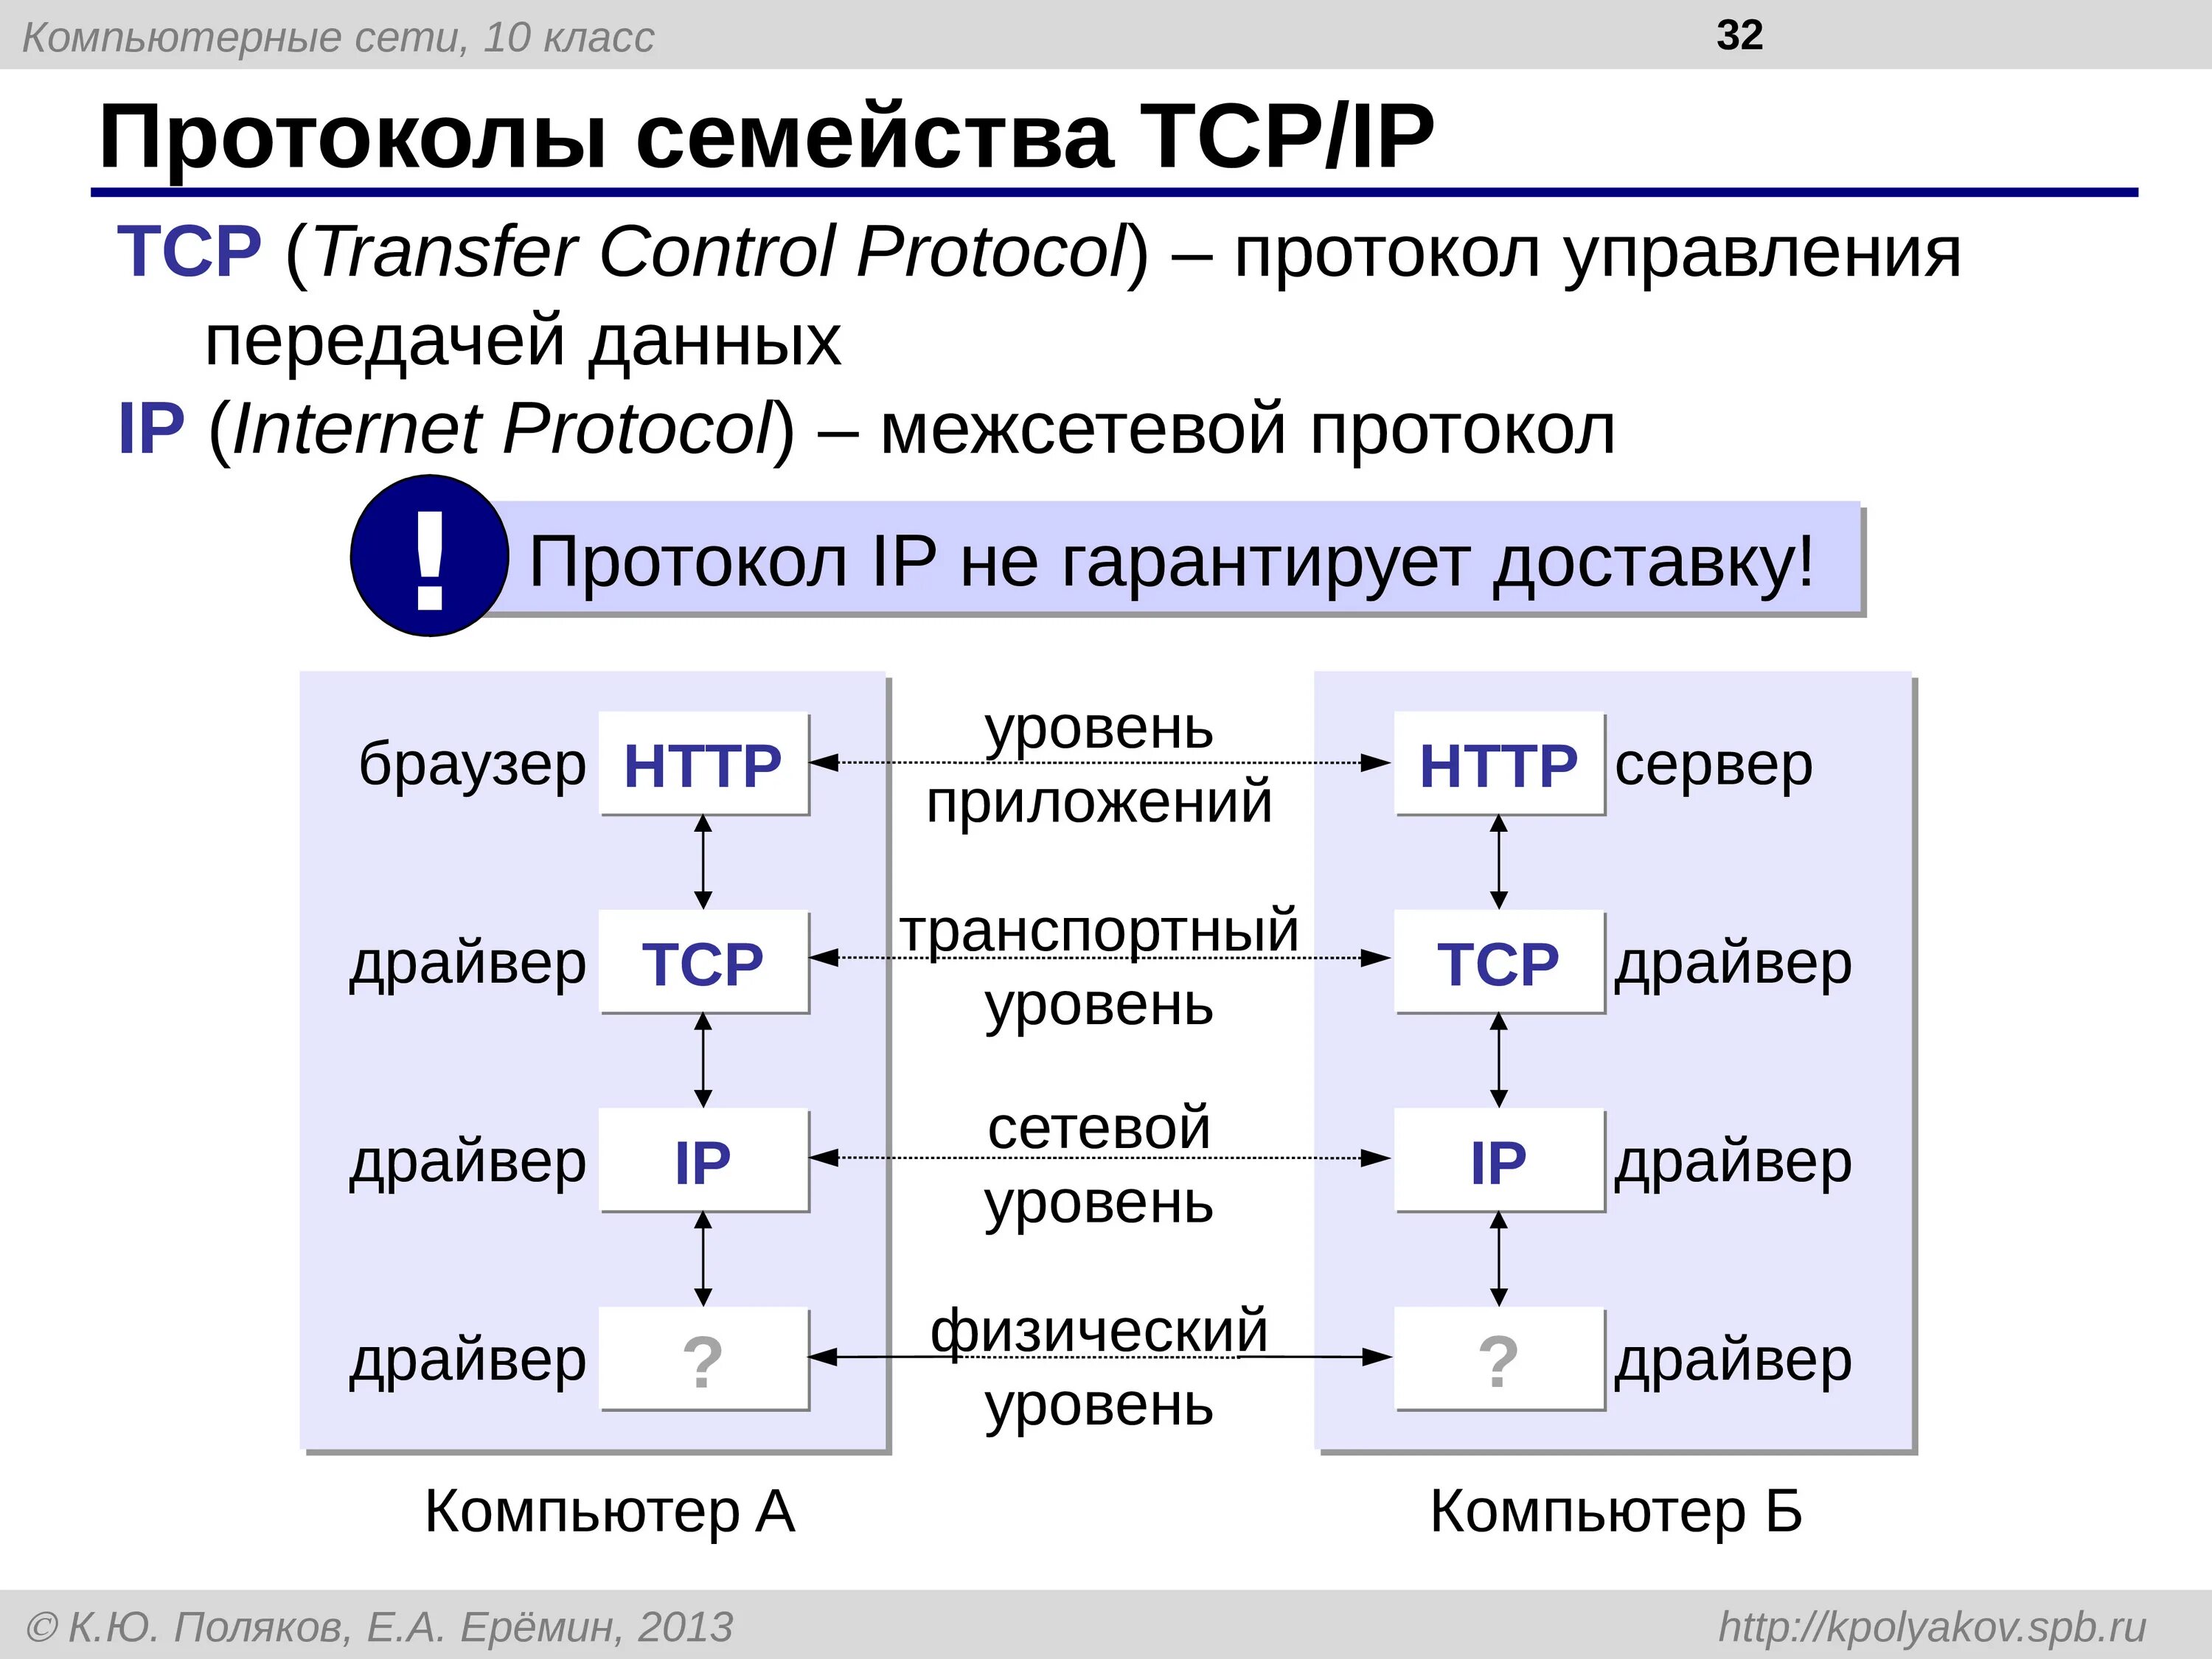 Протокол tcp ip это. Сетевые протоколы ТСР/IP. Протокол TCP/IP. Протокол ТСР/IP передача данных. Семейство сетевых протоколов TCP/IP.